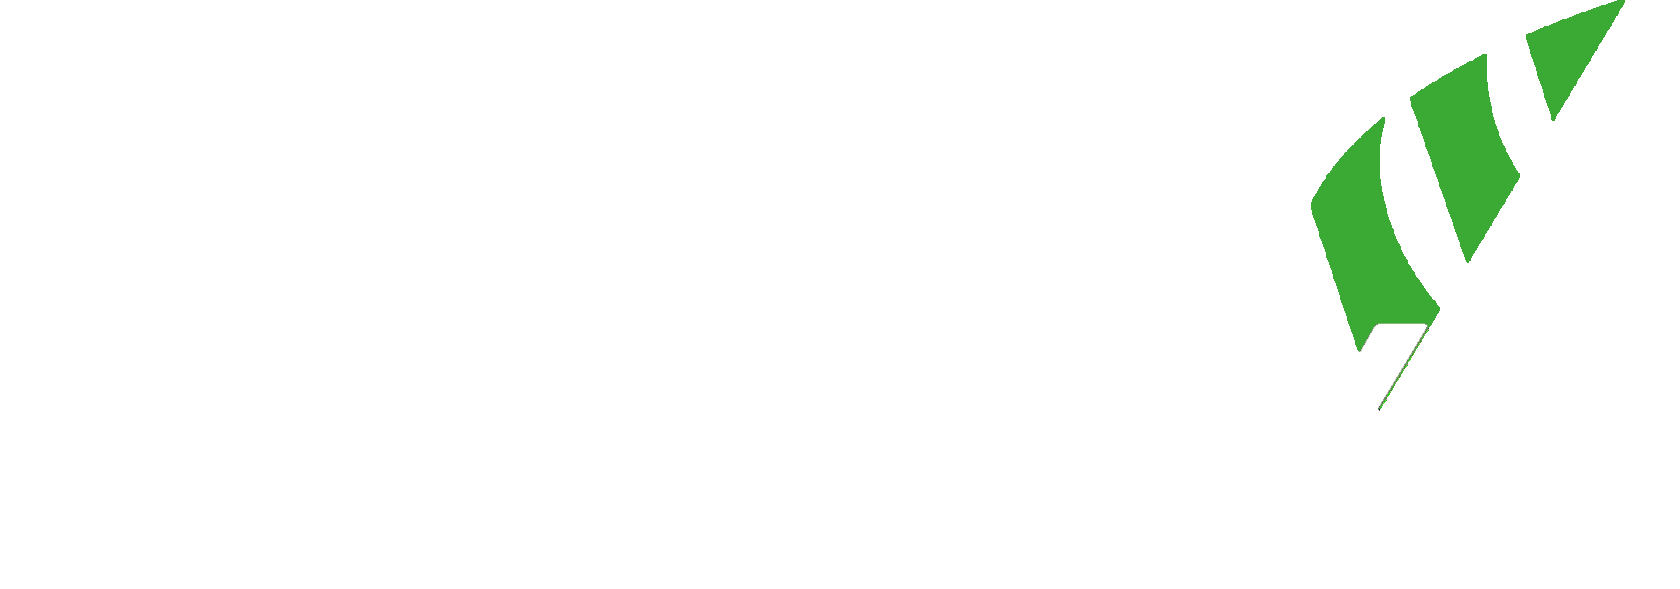 Prohmex Deutschland GmbH